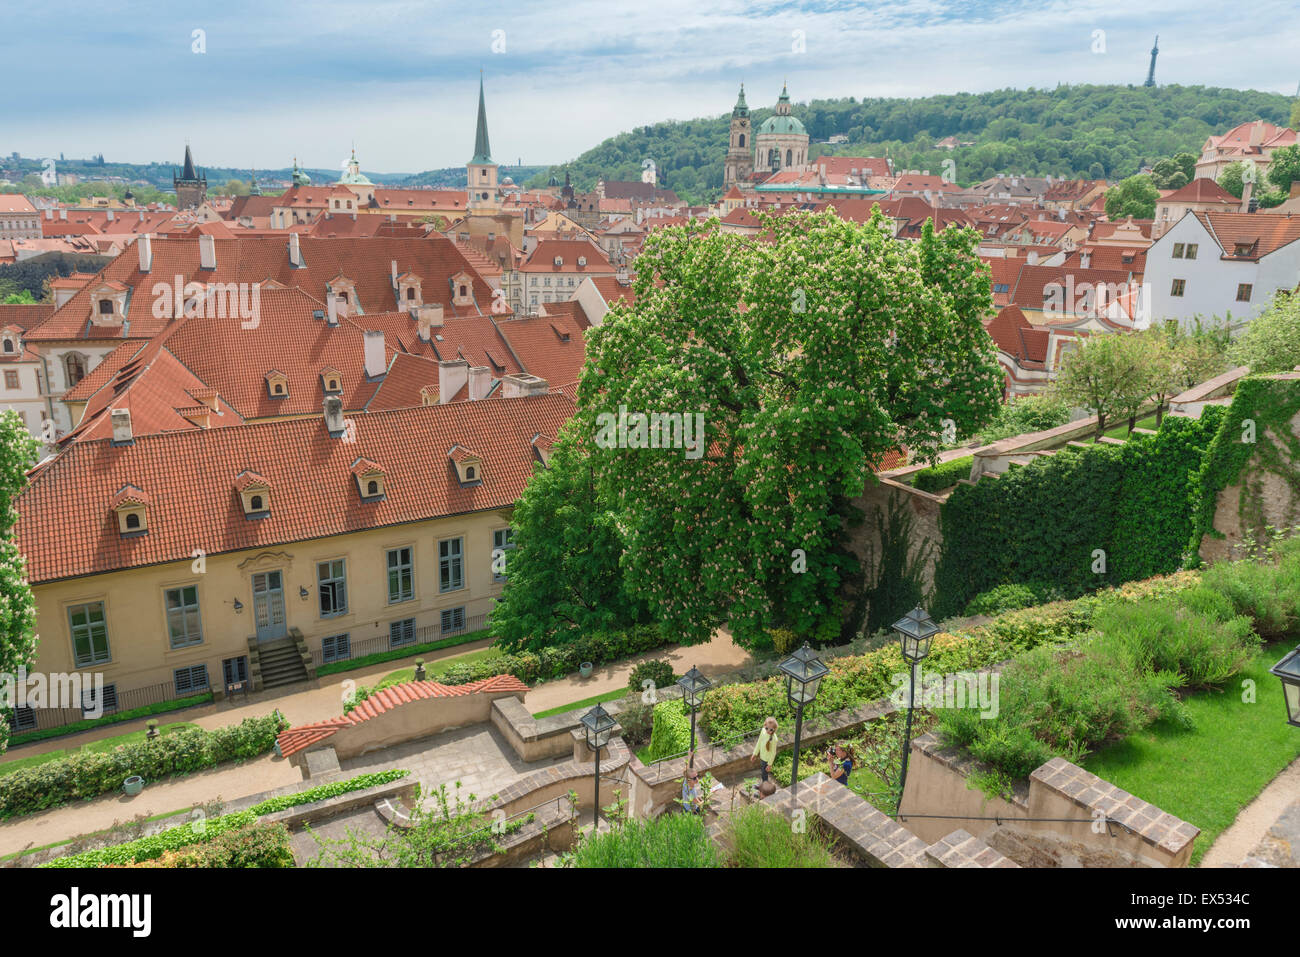 Jardin du Château de Prague, vue du moindre Palffy (fruits) jardin terrasse située au-dessus du quartier Hradcany à Prague, République tchèque. Banque D'Images